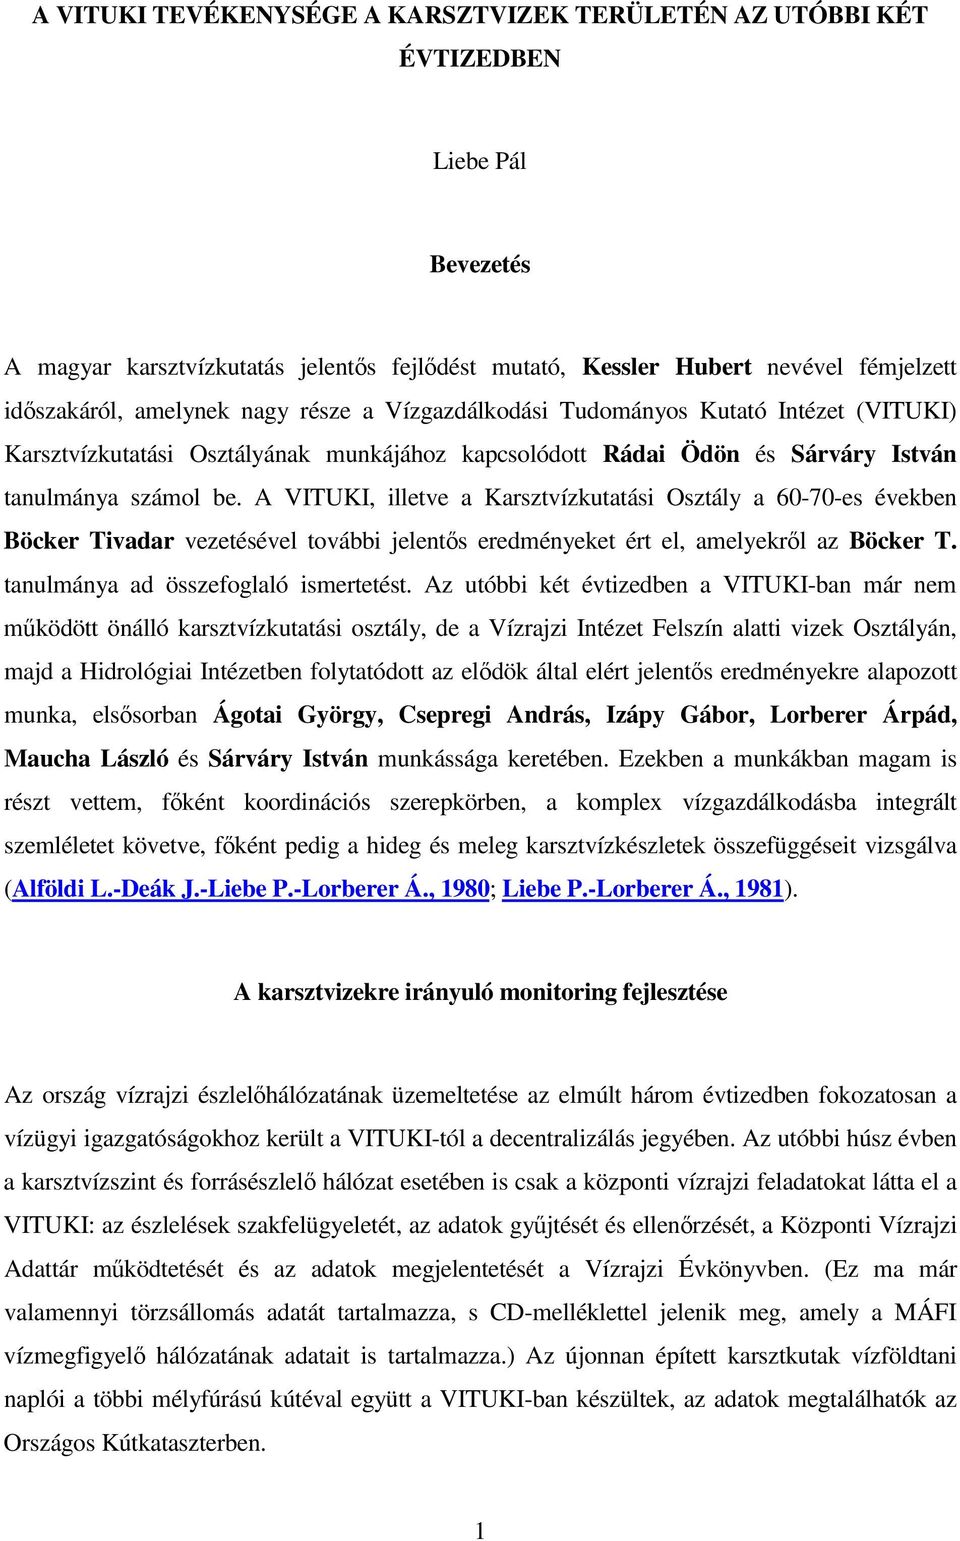 A VITUKI, illetve a Karsztvízkutatási Osztály a 60-70-es években Böcker Tivadar vezetésével további jelents eredményeket ért el, amelyekrl az Böcker T. tanulmánya ad összefoglaló ismertetést.